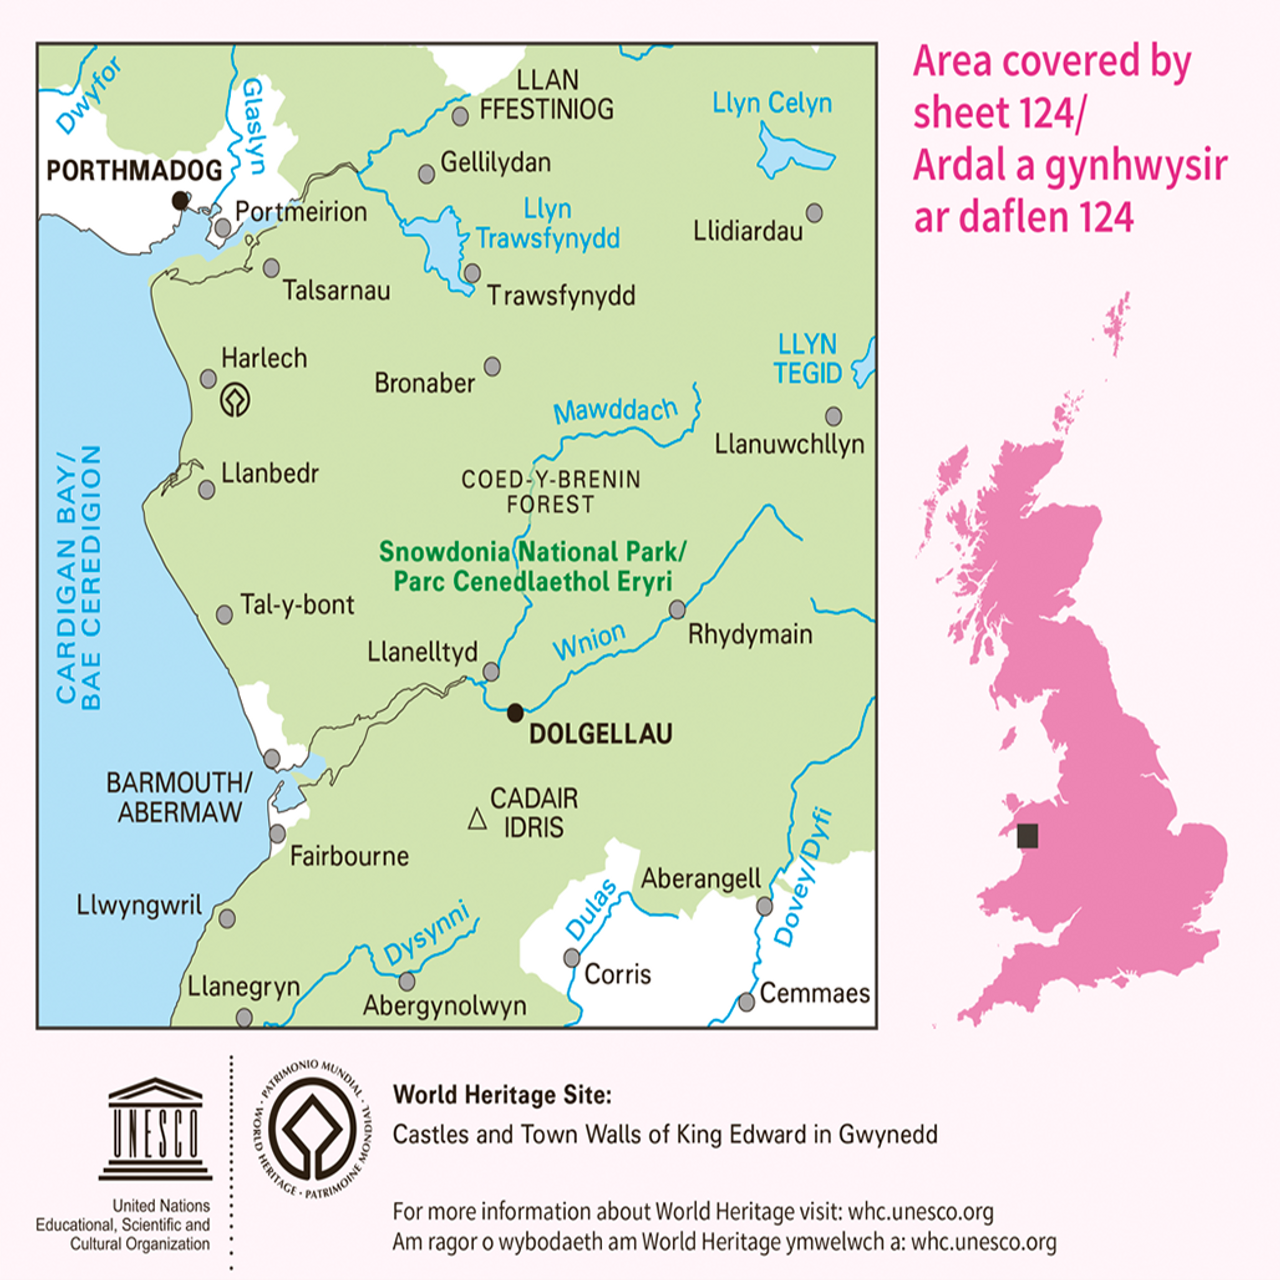 Landranger Map Wales 1:50.000 - Wanderkarten